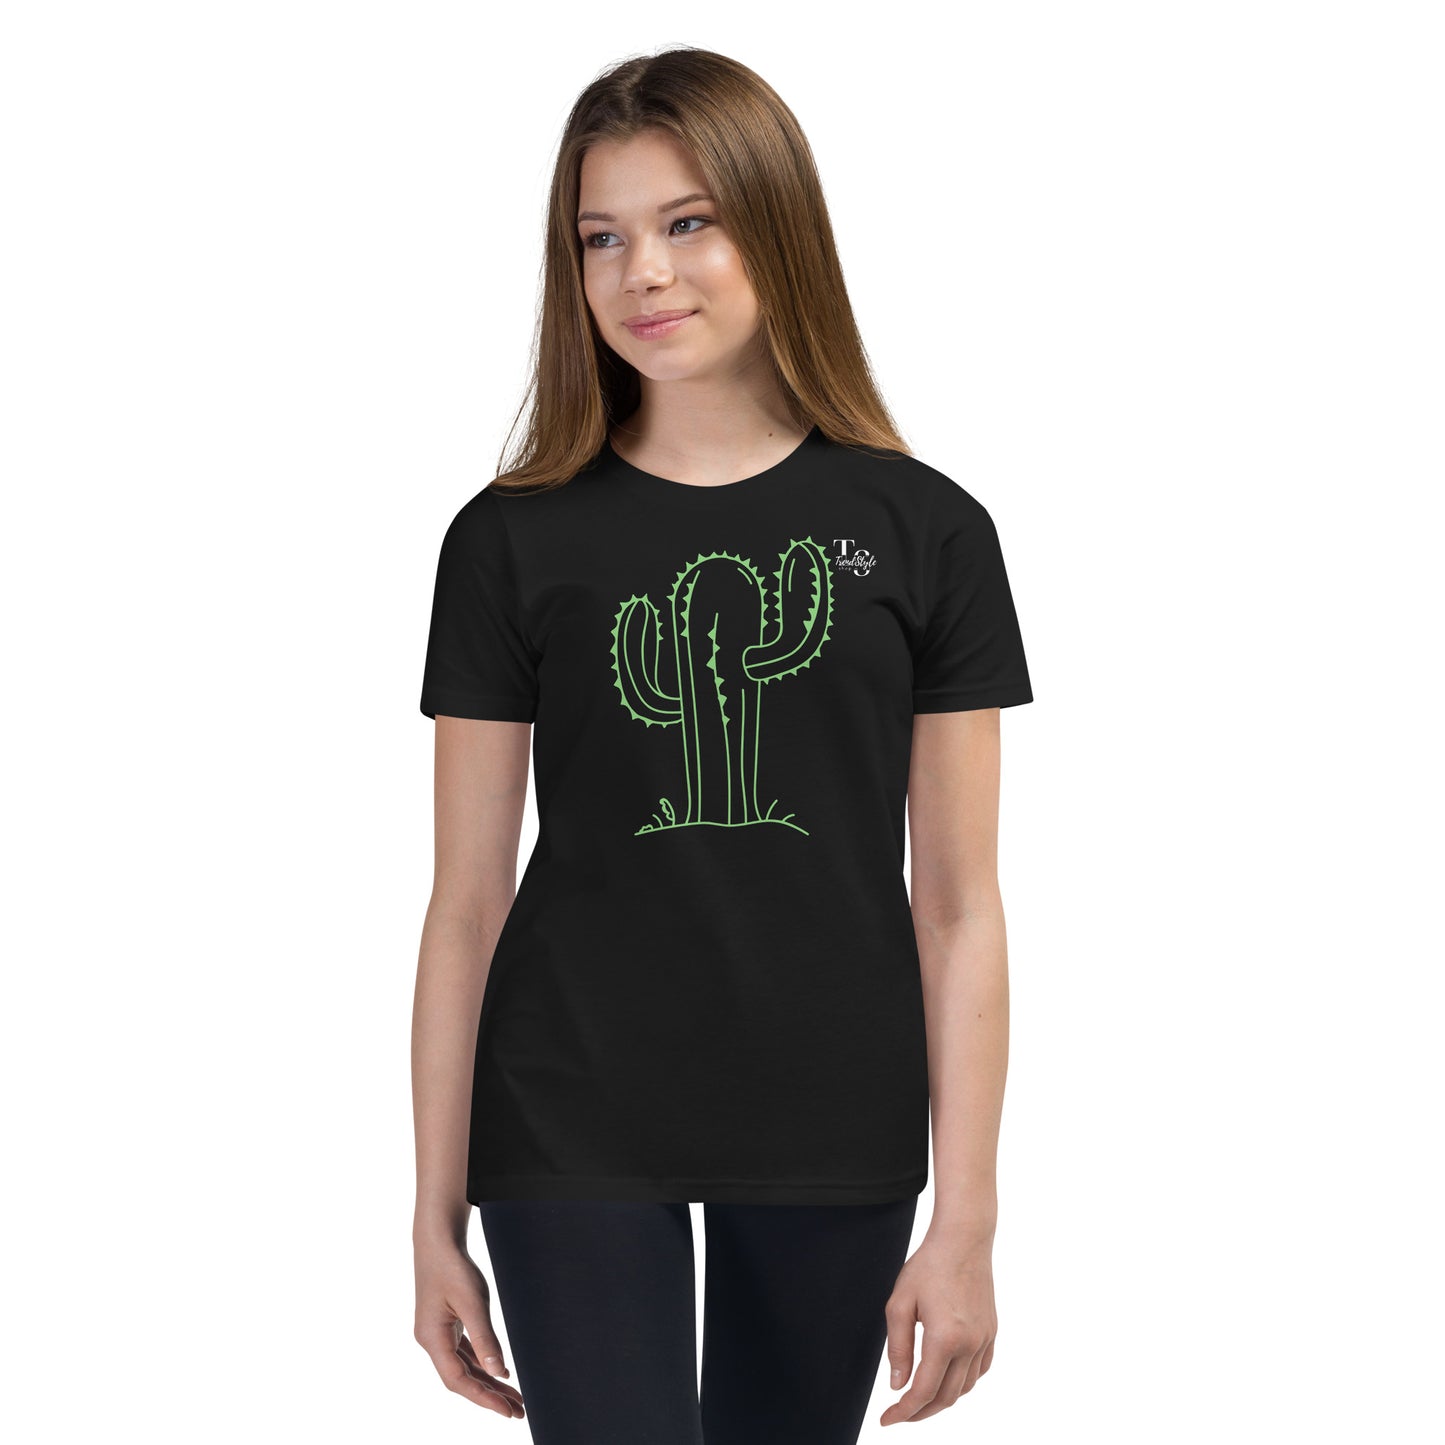 T-Shirt für Teens "Happy Cactus"